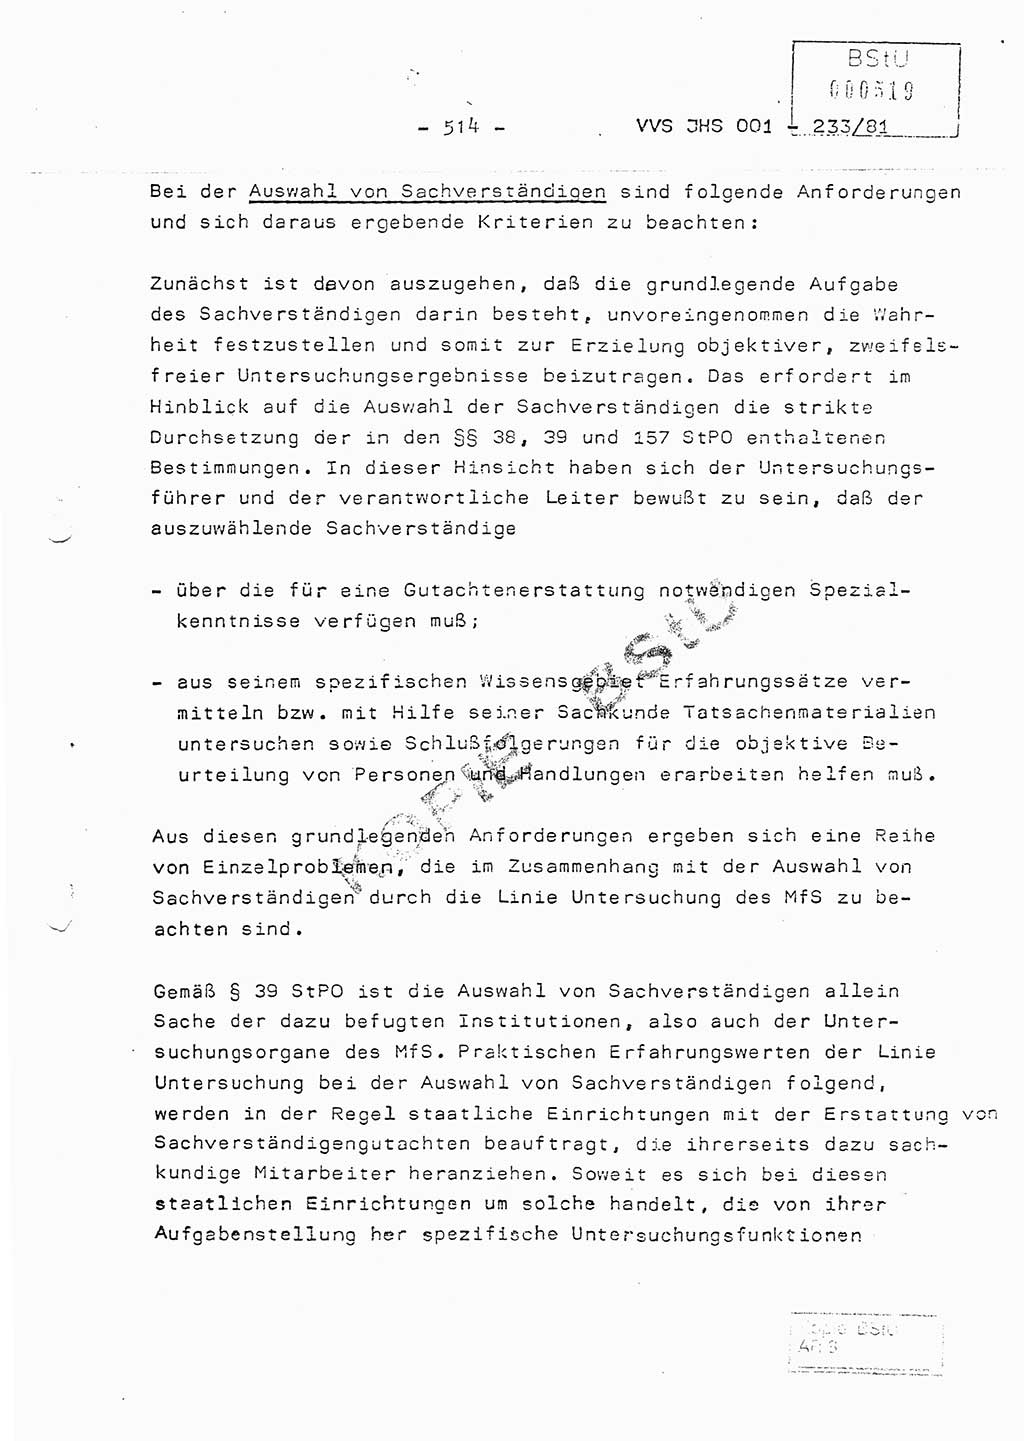 Dissertation Oberstleutnant Horst Zank (JHS), Oberstleutnant Dr. Karl-Heinz Knoblauch (JHS), Oberstleutnant Gustav-Adolf Kowalewski (HA Ⅸ), Oberstleutnant Wolfgang Plötner (HA Ⅸ), Ministerium für Staatssicherheit (MfS) [Deutsche Demokratische Republik (DDR)], Juristische Hochschule (JHS), Vertrauliche Verschlußsache (VVS) o001-233/81, Potsdam 1981, Blatt 514 (Diss. MfS DDR JHS VVS o001-233/81 1981, Bl. 514)